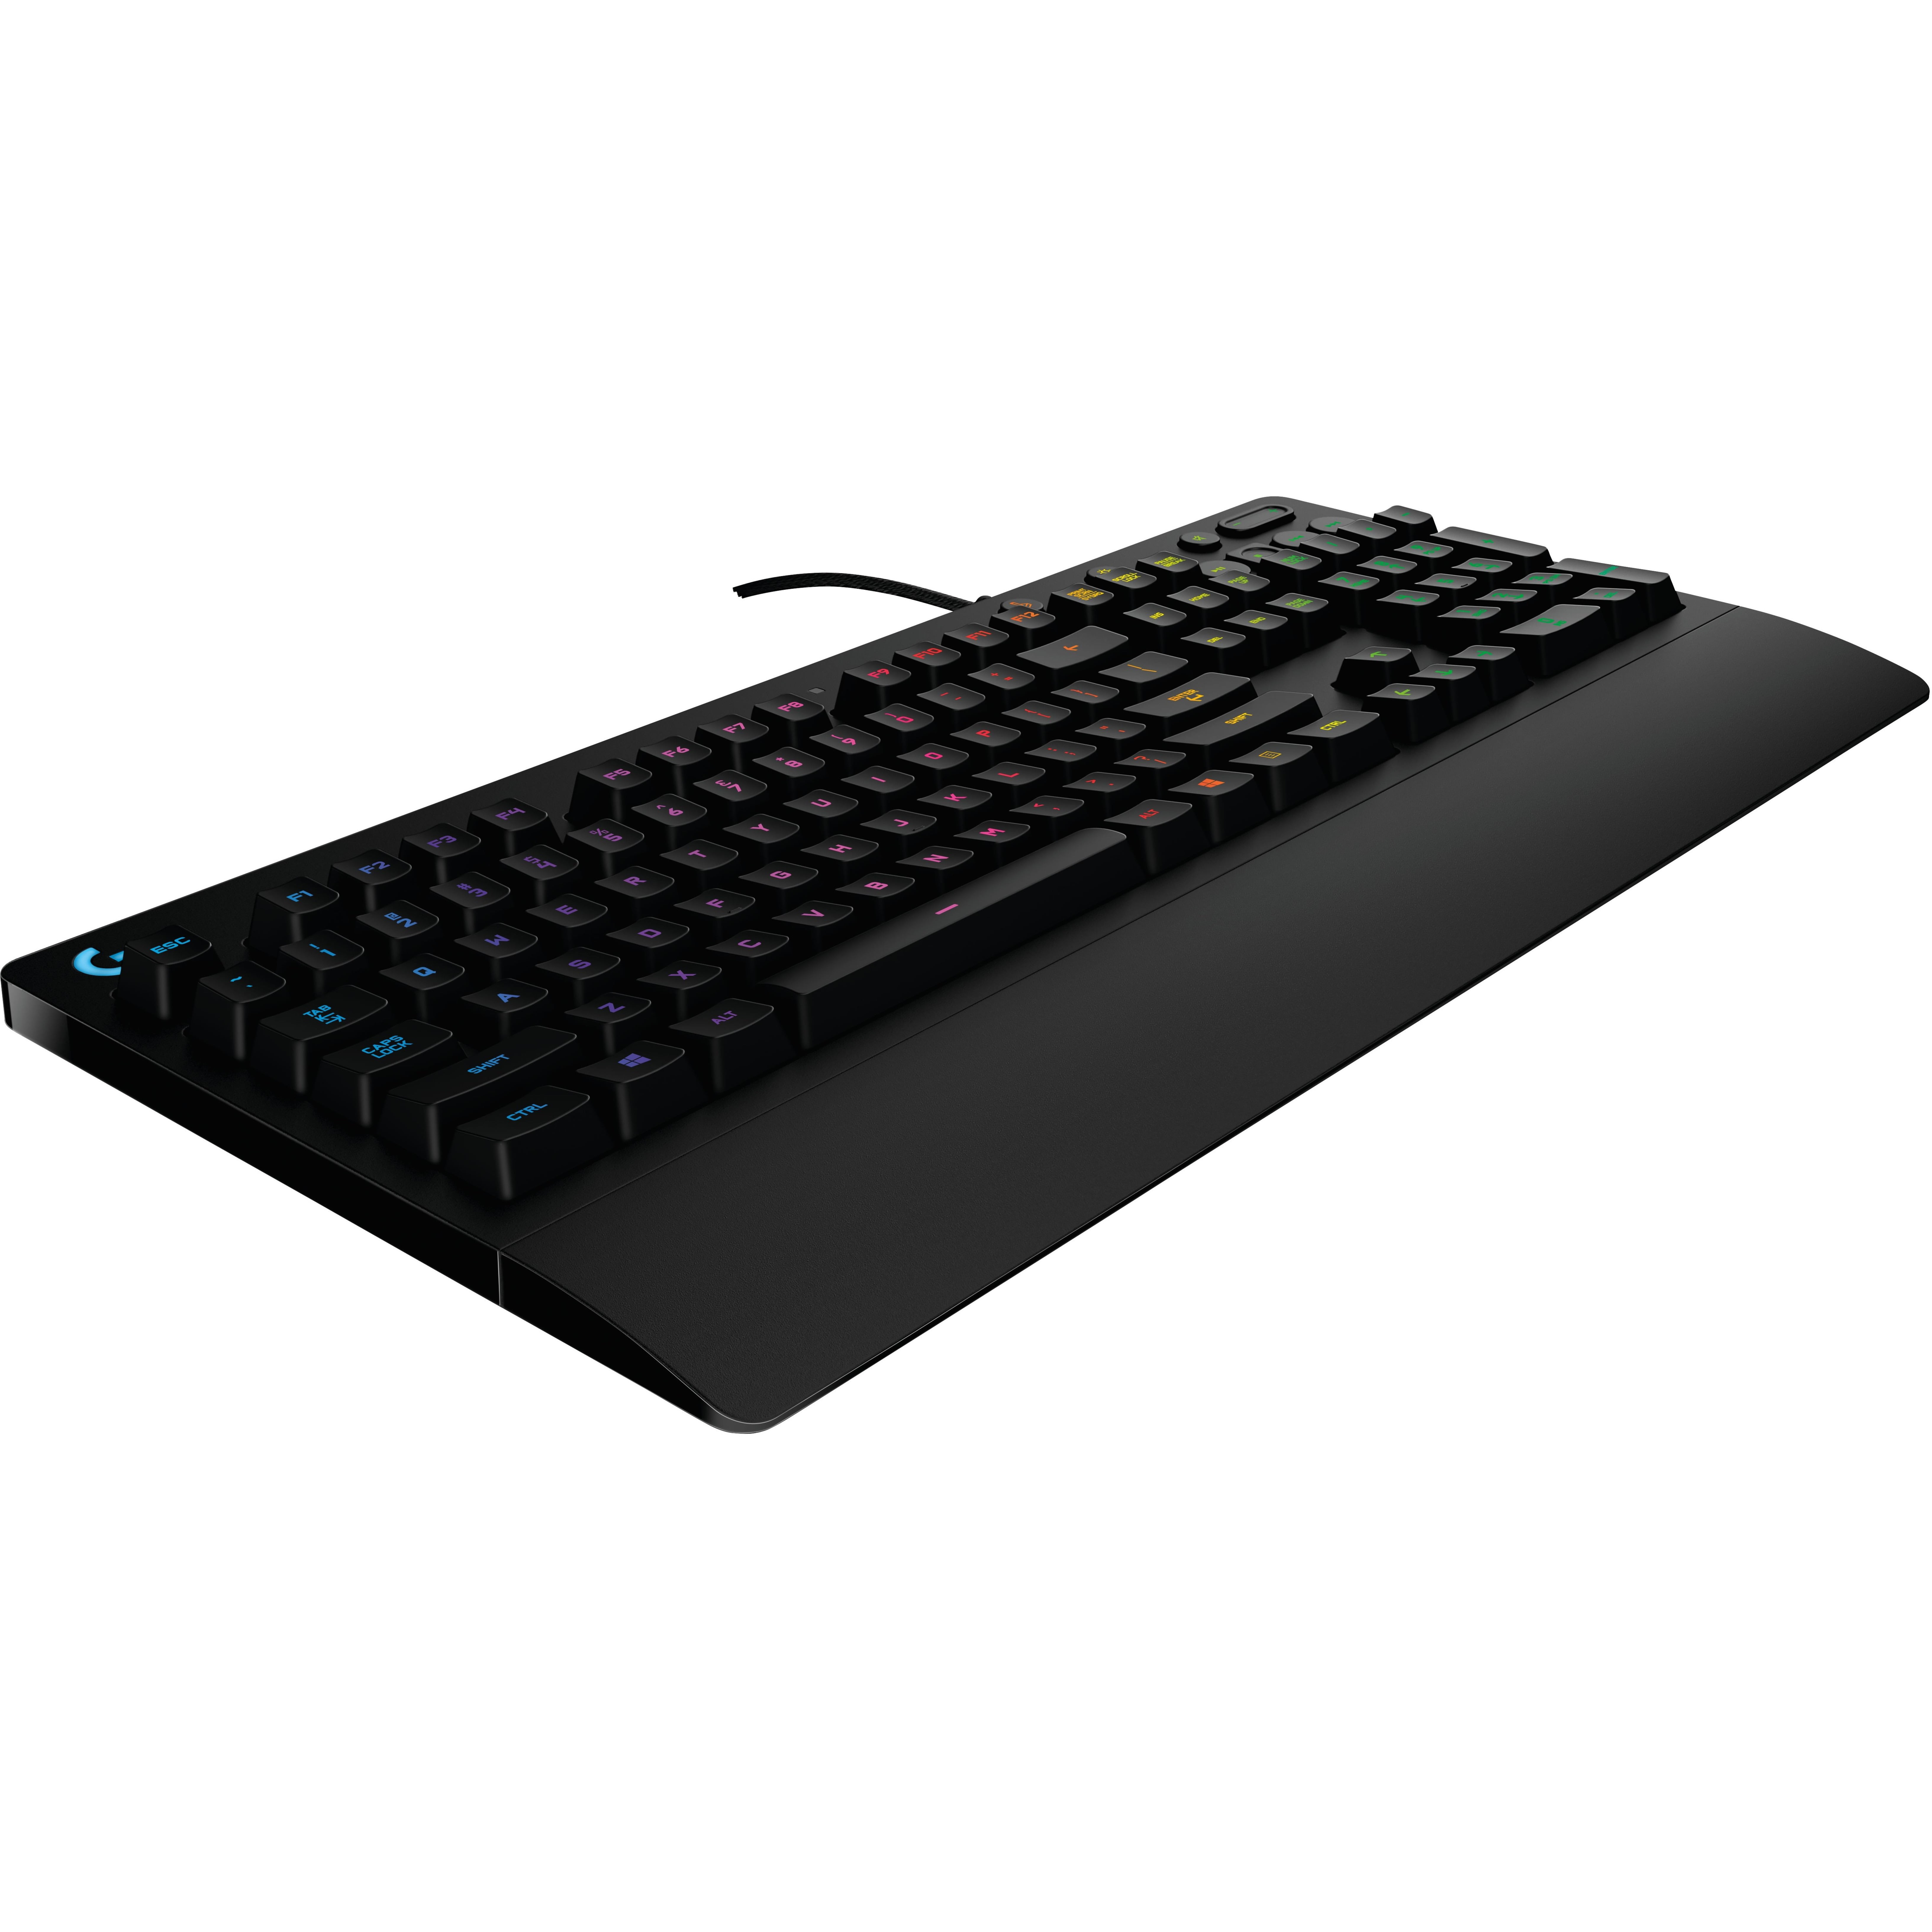 Logitech G213 Prodigy Gaming Keyboard Prodigy RGB Gaming Keyboard Walmart.com